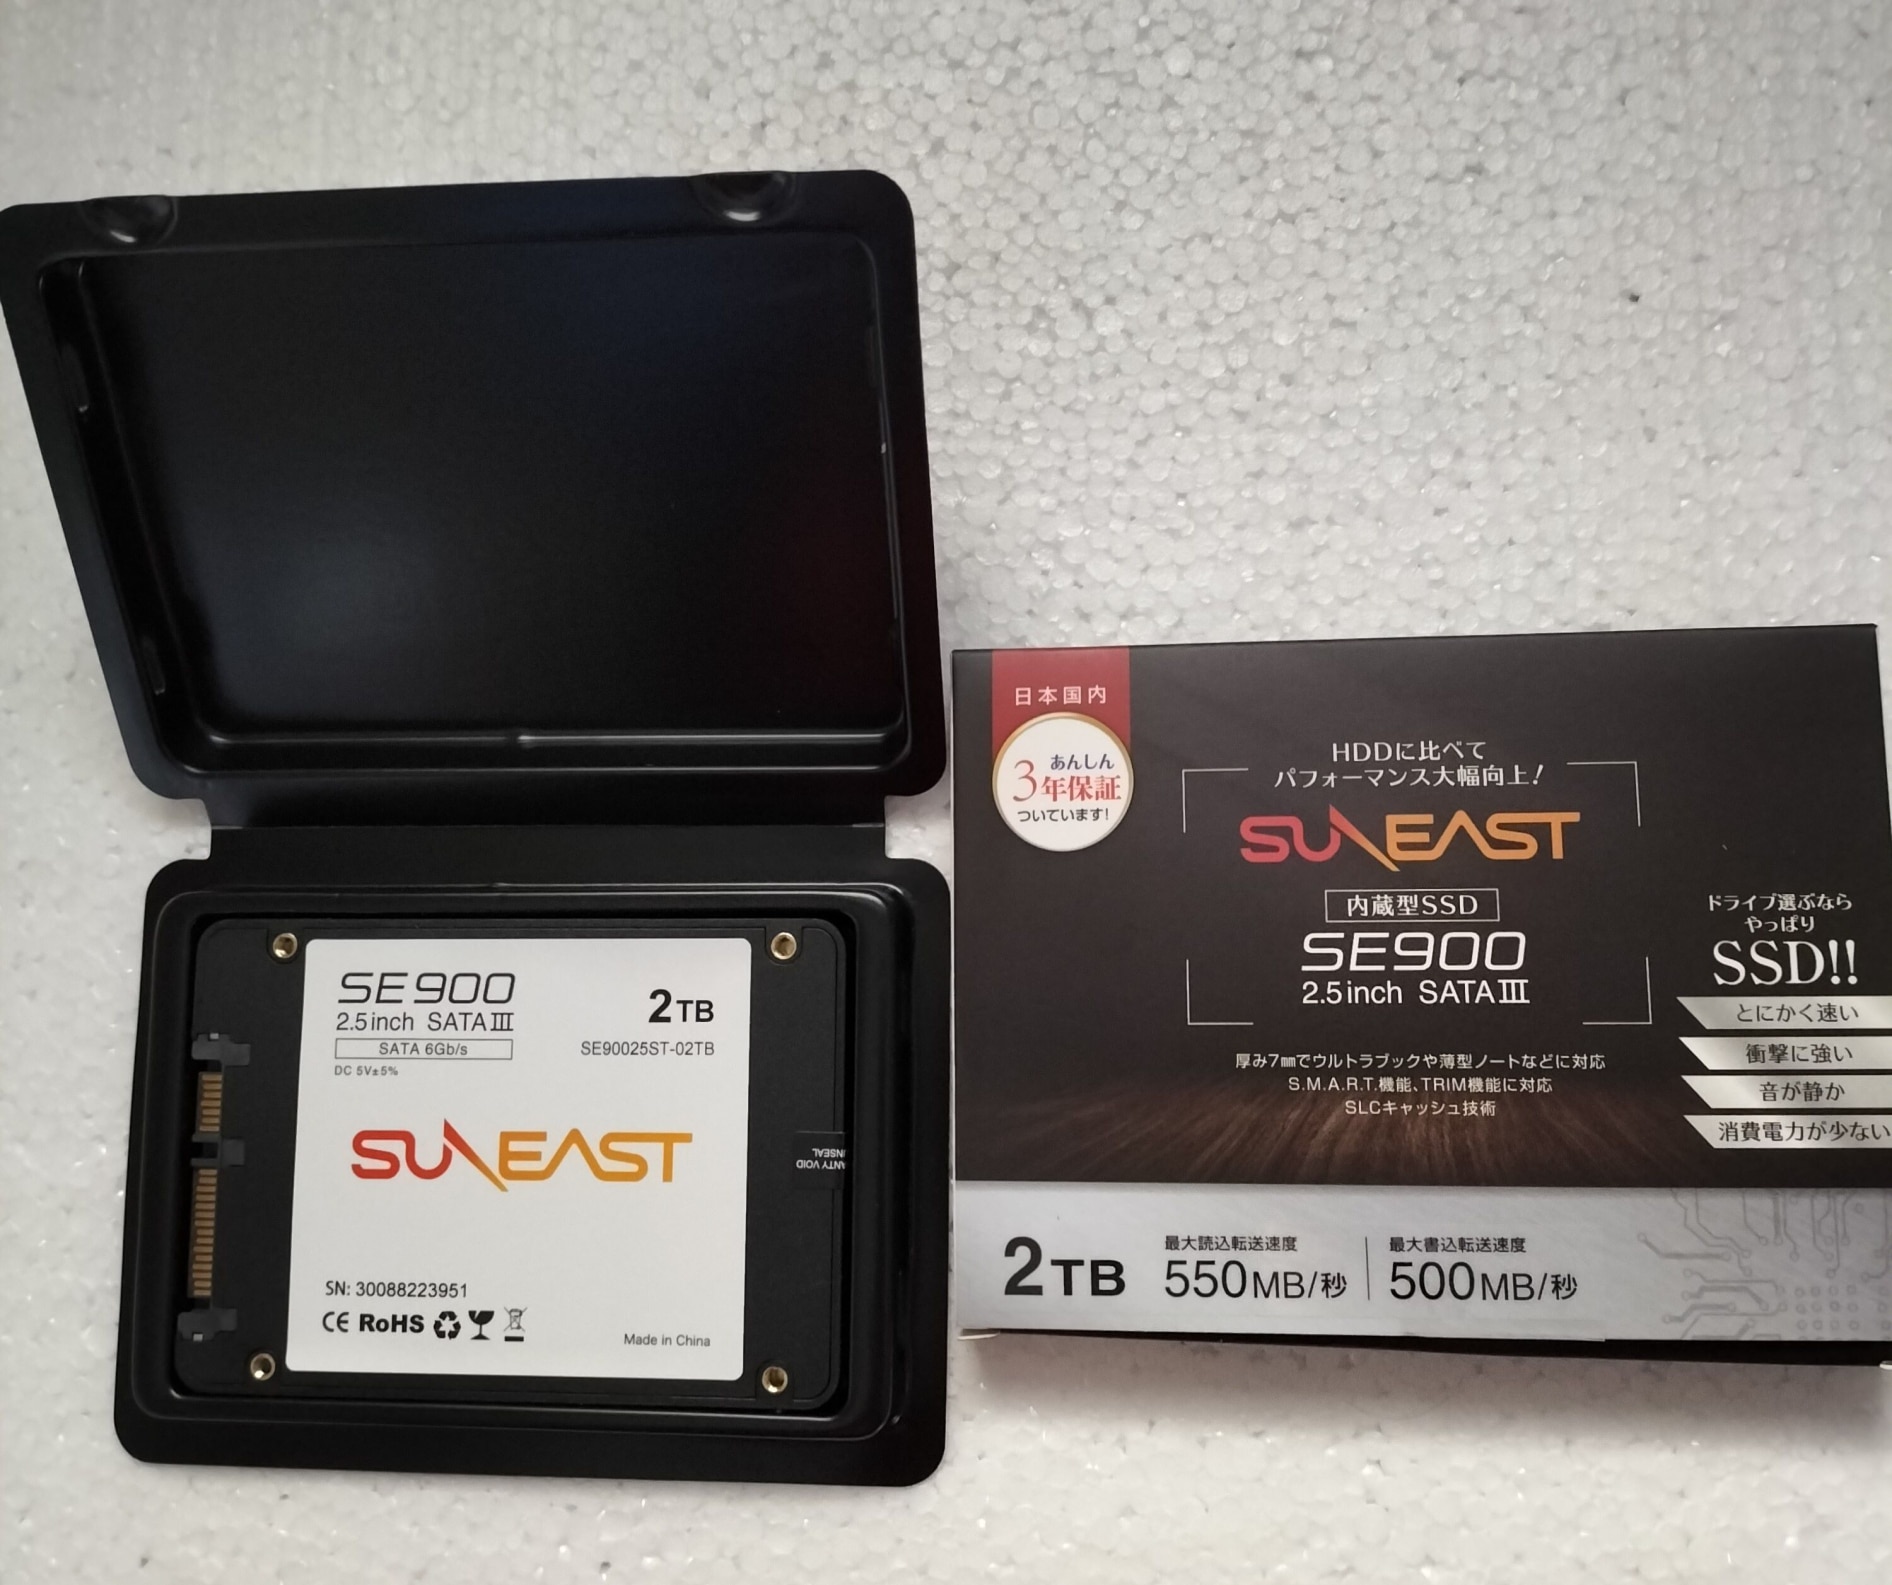 信憑 2TB SSD SUNEAST SE900 2.5inch SATA III santaritasericita.com.br